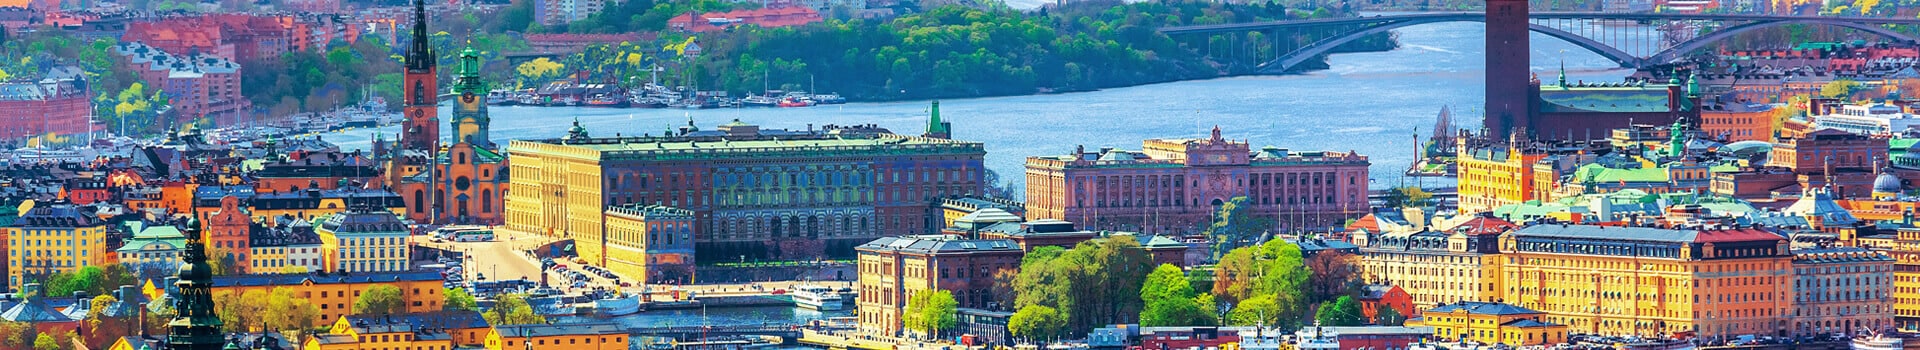 Amesterdao - Estocolmo